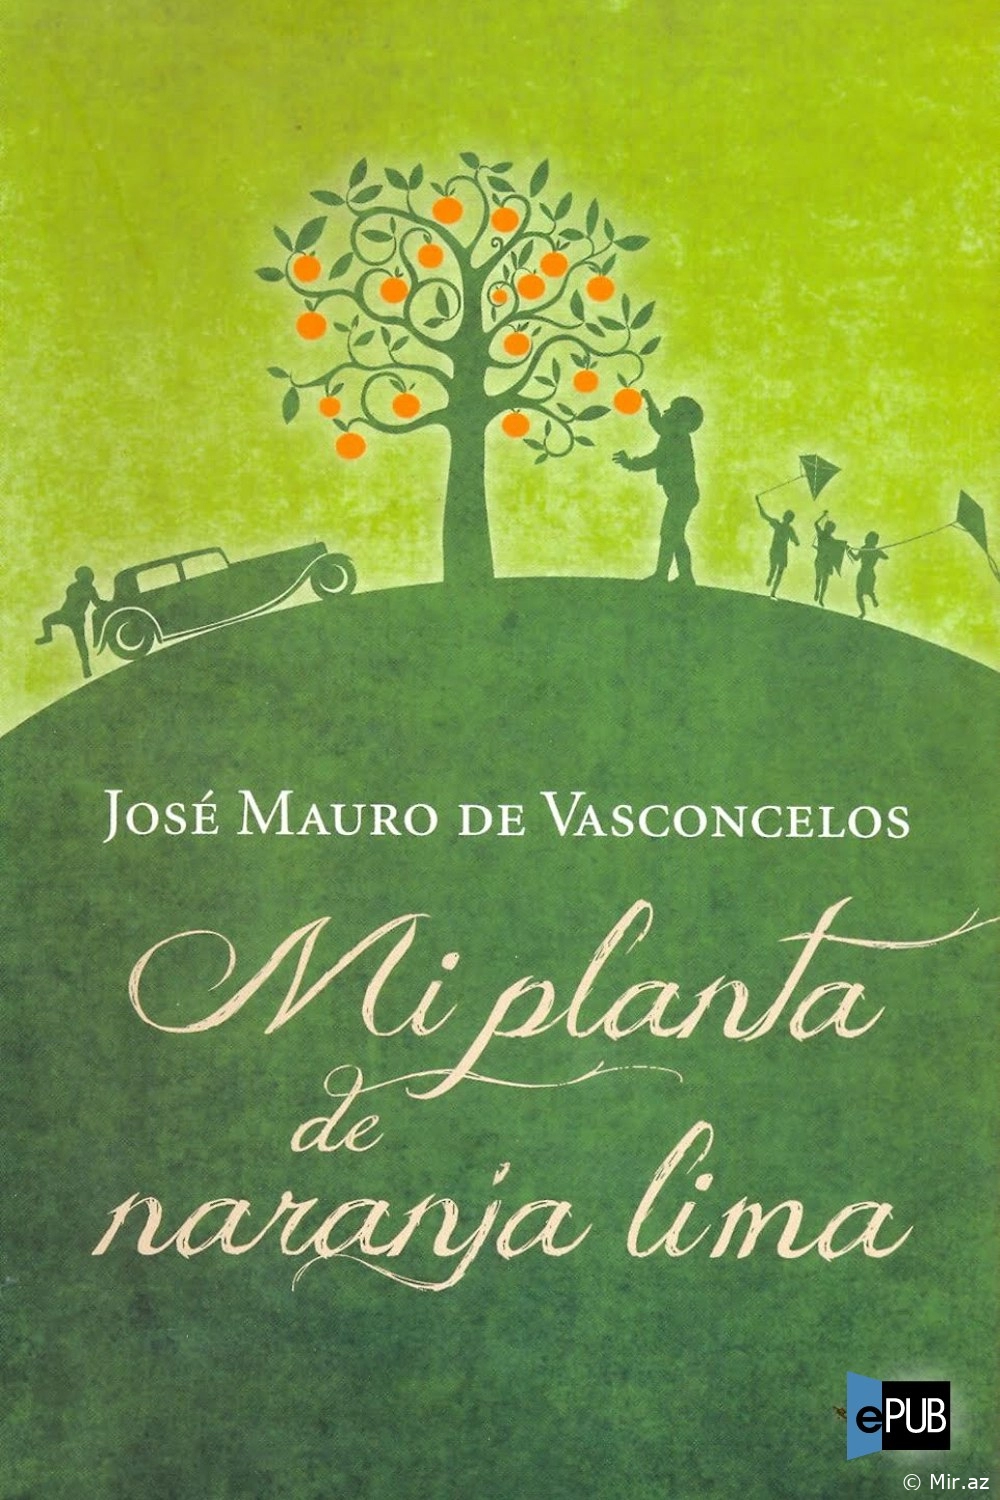 José Mauro de Vasconcelos "Mi planta de naranja lima" PDF